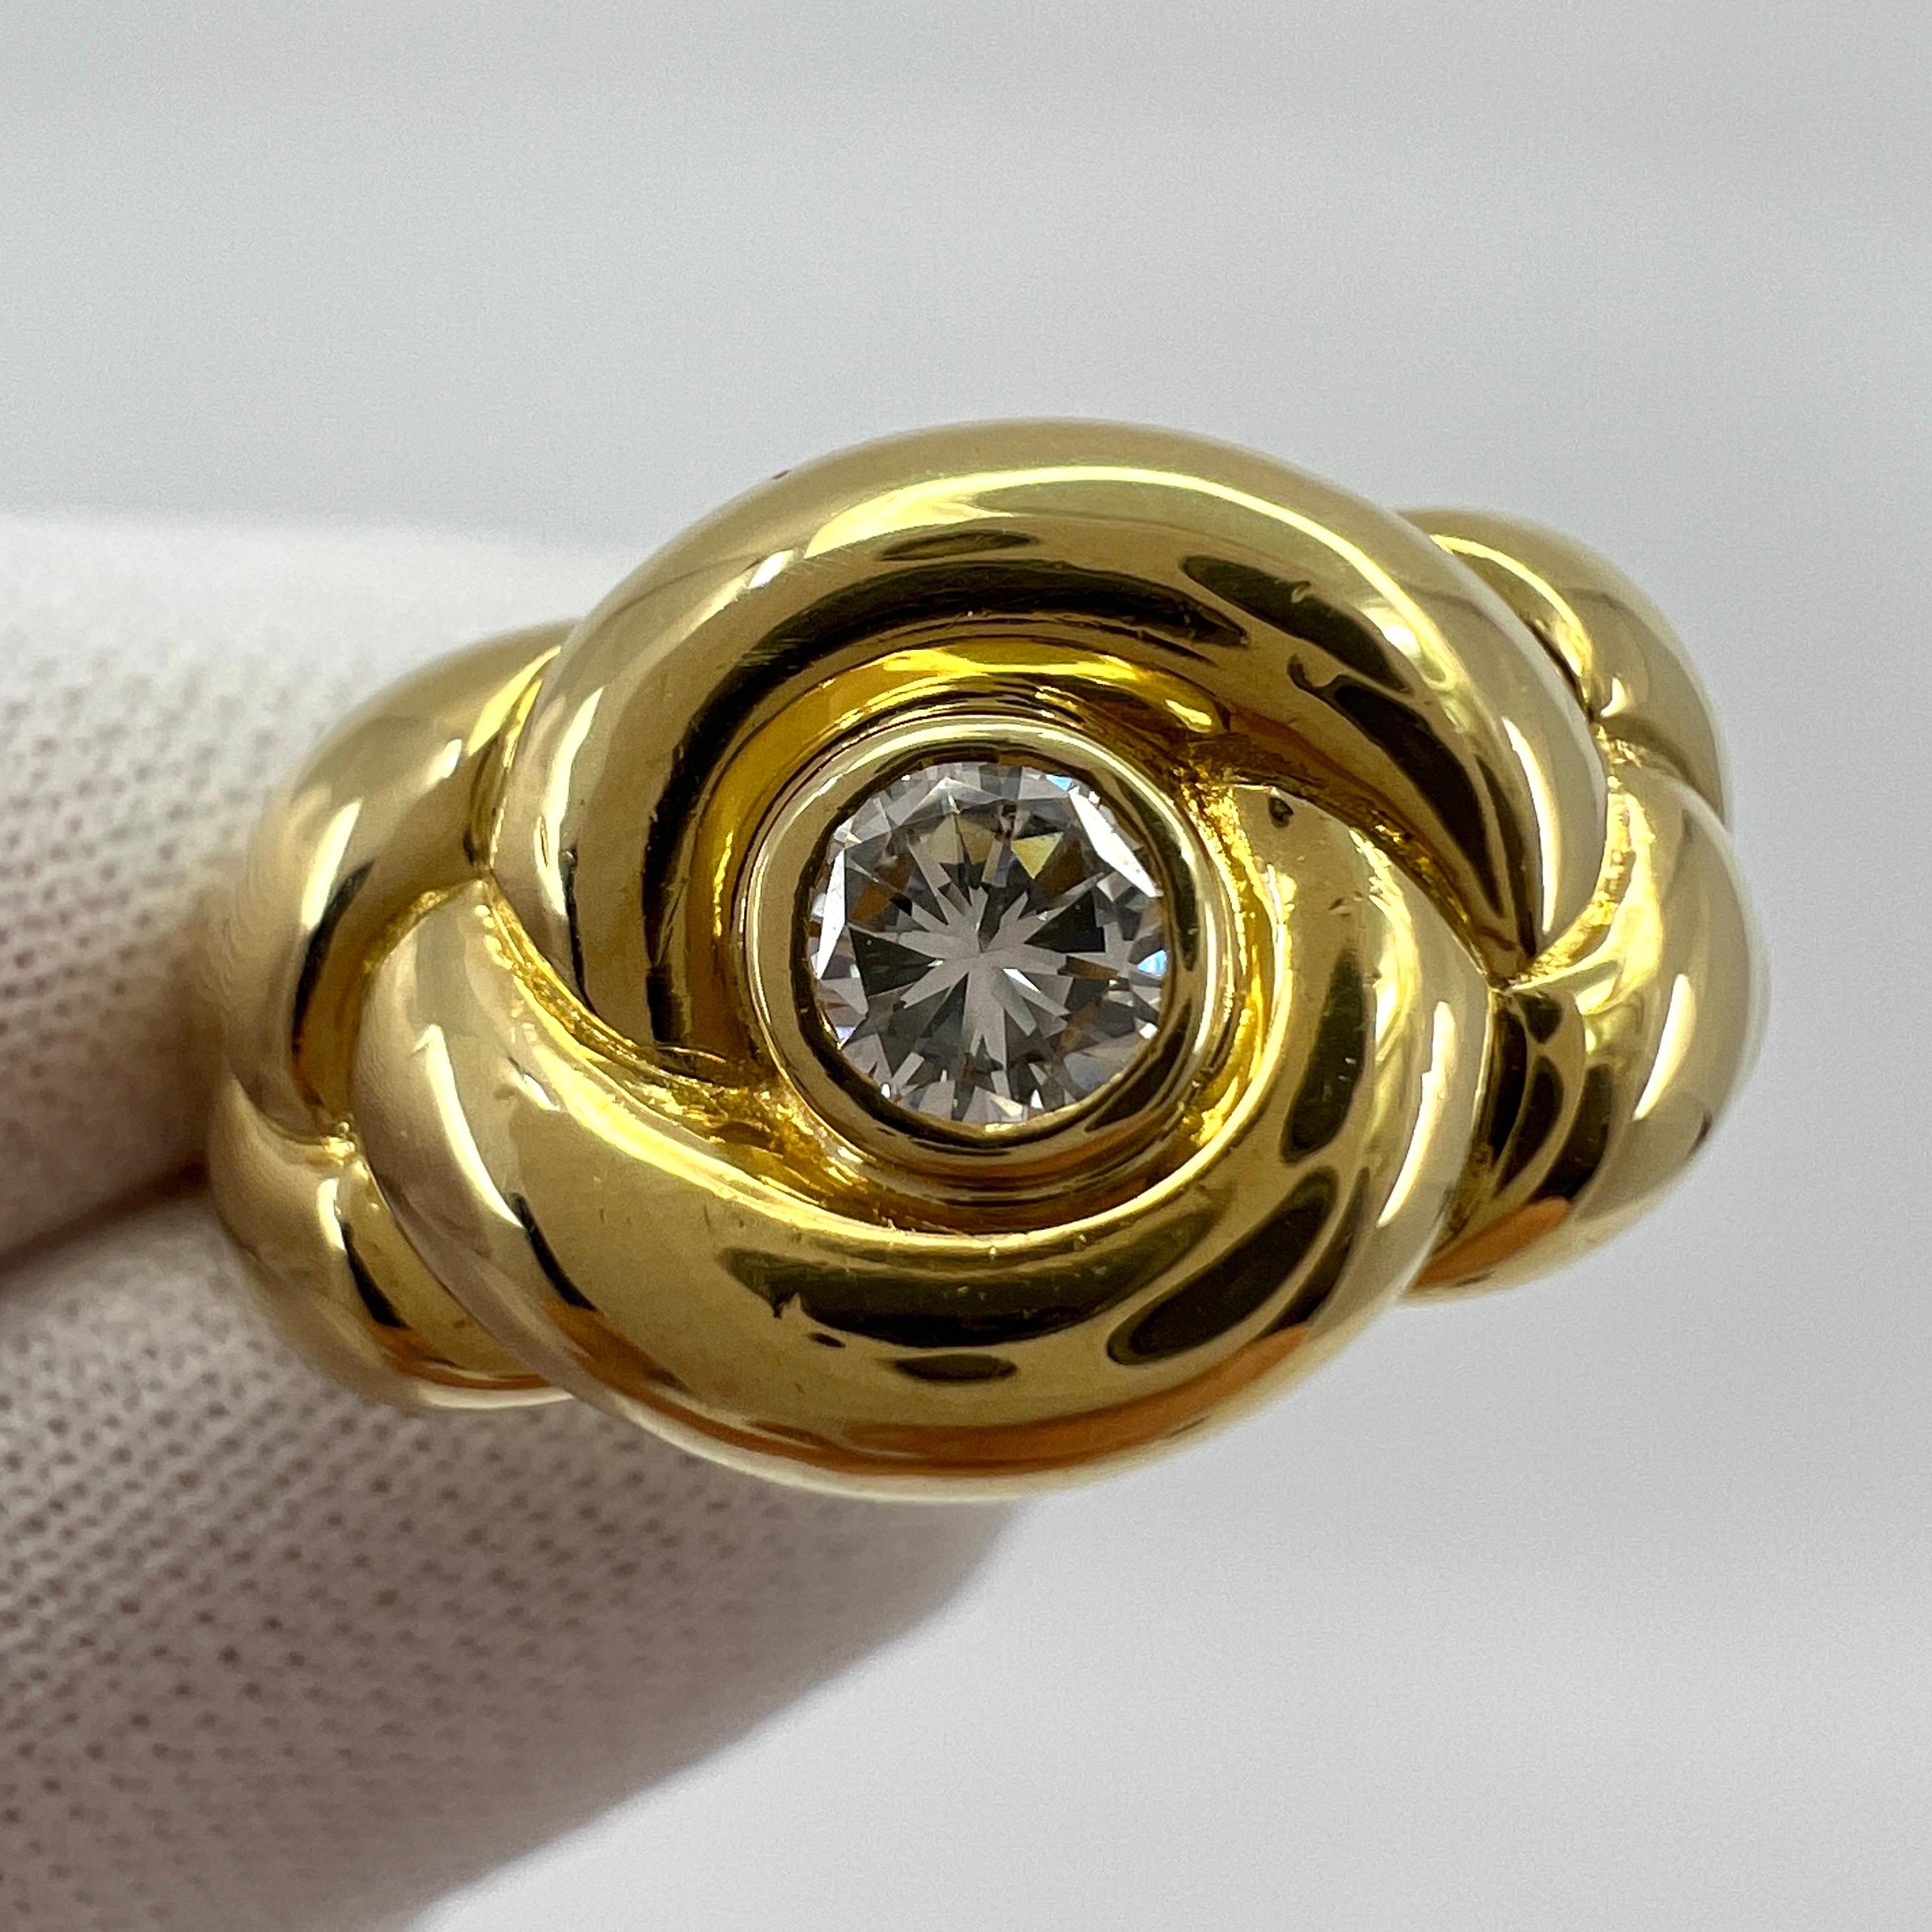 Vintage Van Cleef & Arpels Bague en or jaune 18 carats avec diamant en forme de corde tressée.

Superbe bague vintage VCA avec un motif unique de tresse/corde et un diamant d'excellente qualité de 3,5 mm (environ 0,17 ct). Le diamant présente une